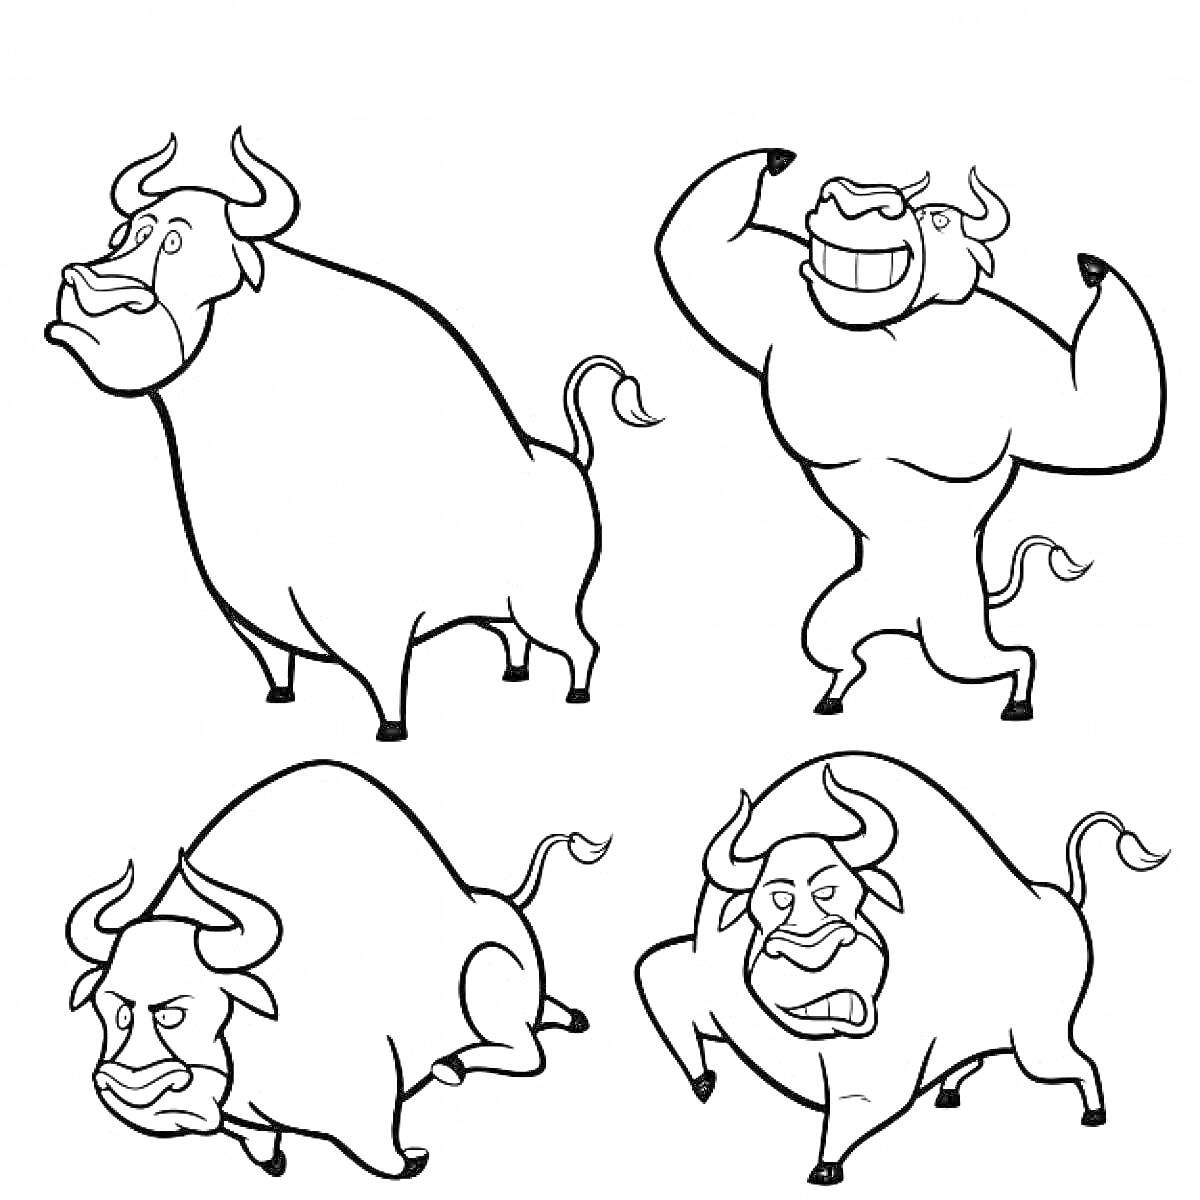 Раскраска Четыре быка с разными эмоциями и позами: стоящий спокойный бык, сильный бык с поднятыми руками, недовольный бык в позе нападения, смеющийся бык